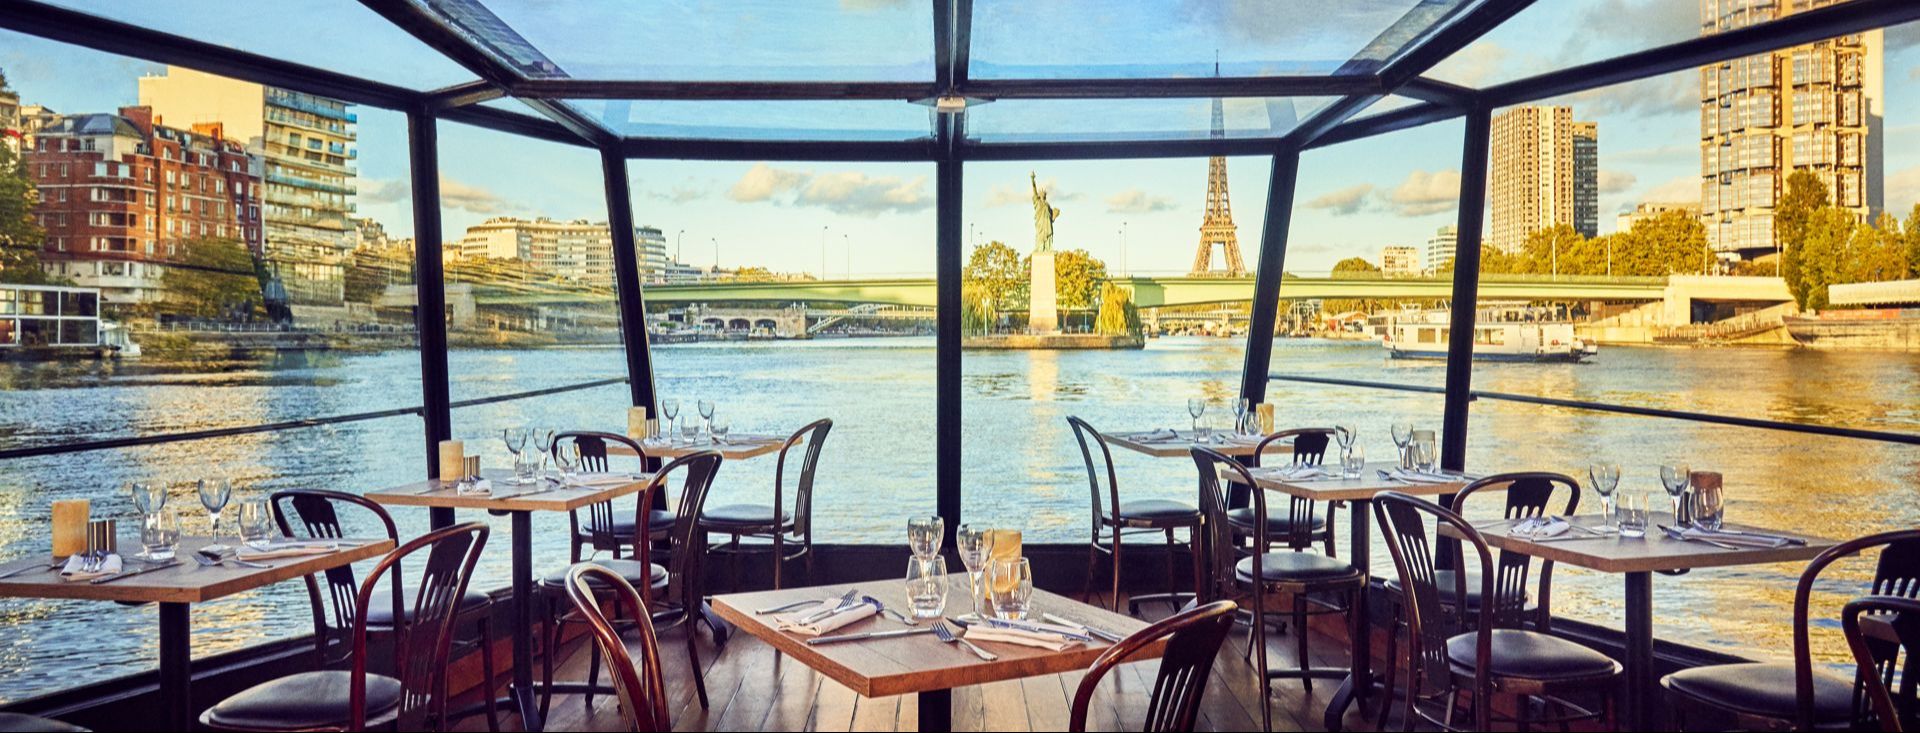 Almuerzo-Crucero por el Sena, Mesa a la ventana, bebidas incluidas